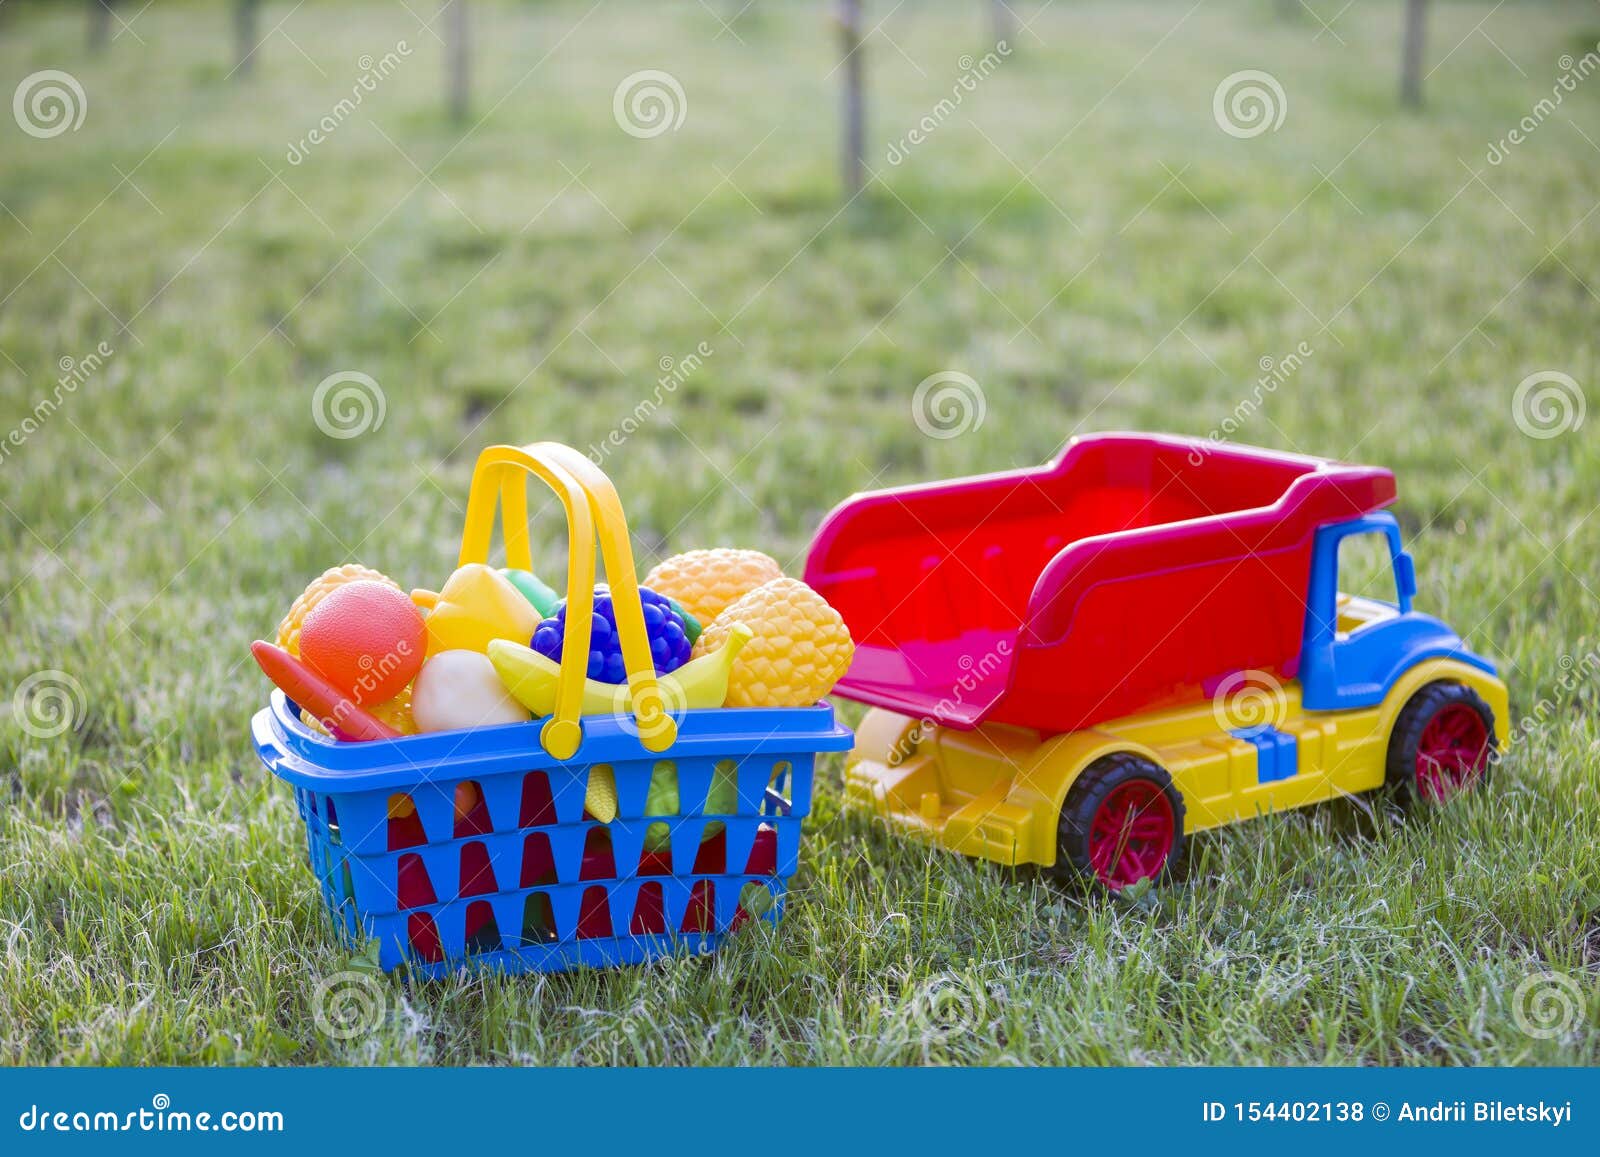 Auto Truckand Ein Korb Mit Spielzeugobst Und Gemüse - Helle Bunte  Plastikspielwaren Für Kinder Draußen am Sonnigen Sommertag Stockfoto - Bild  von eingabe, kaufen: 154402138